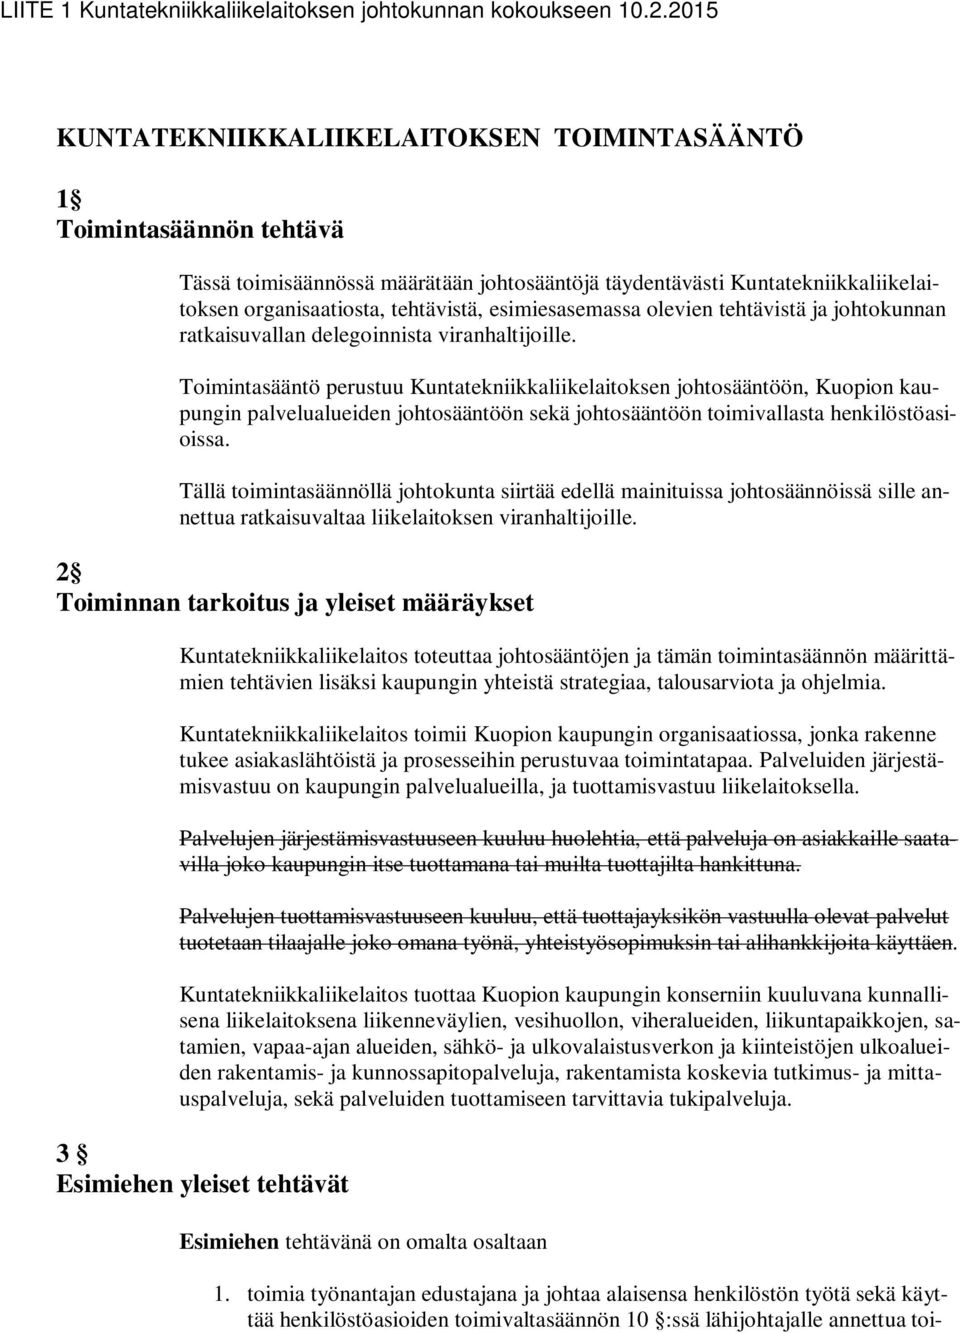 Toimintasääntö perustuu Kuntatekniikkaliikelaitoksen johtosääntöön, Kuopion kaupungin palvelualueiden johtosääntöön sekä johtosääntöön toimivallasta henkilöstöasioissa.